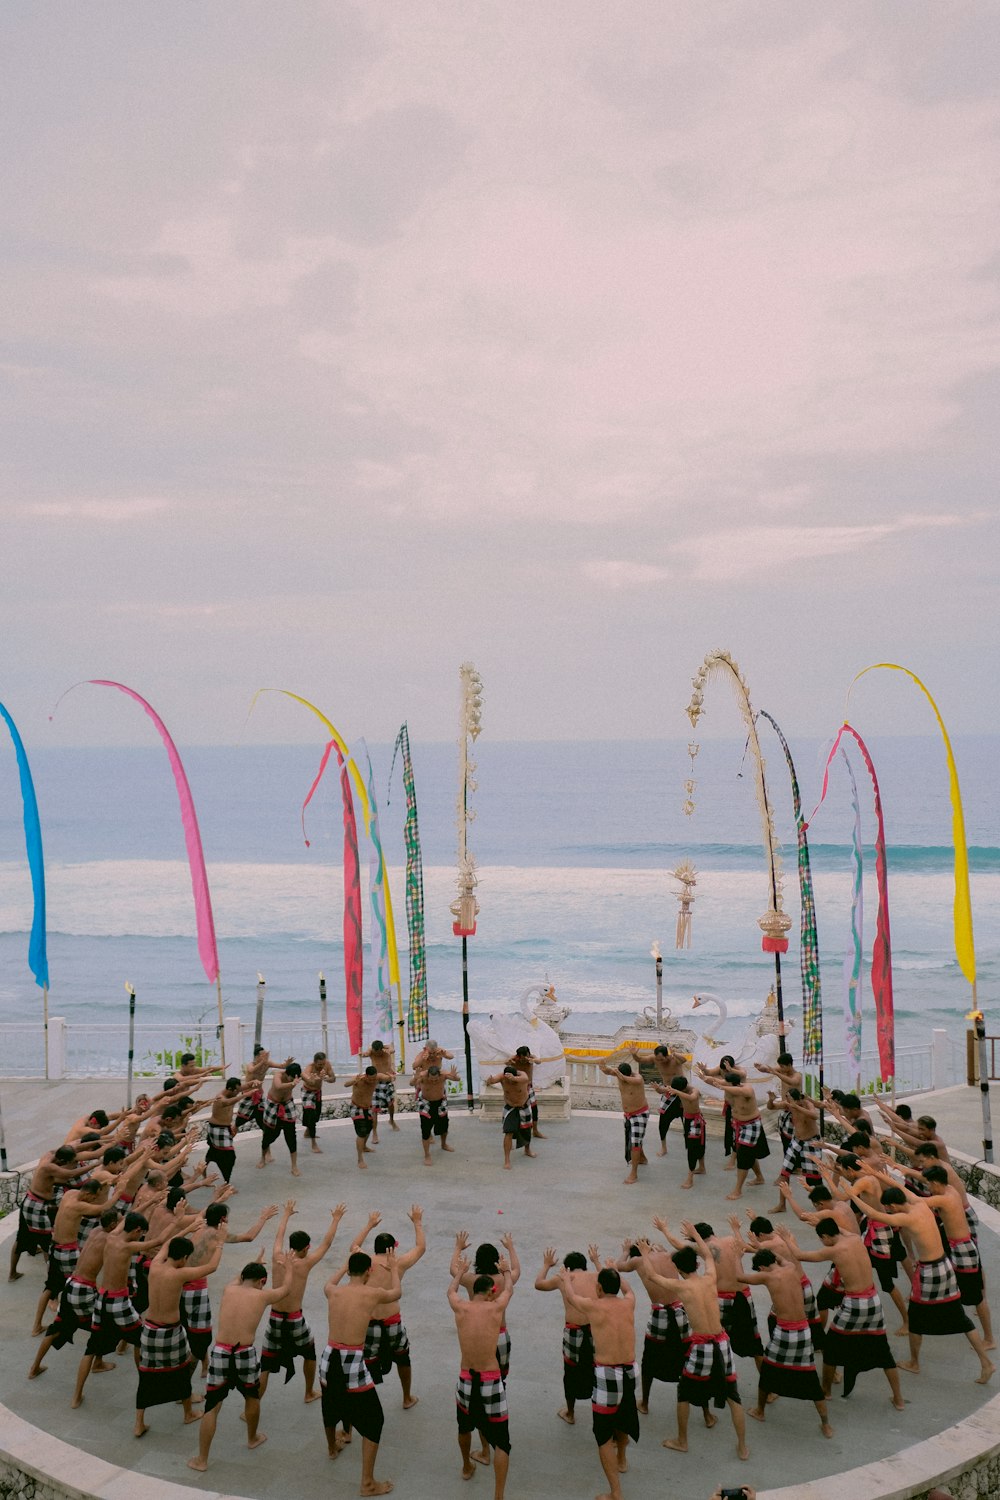 Un gruppo di persone in piedi in cerchio su una spiaggia